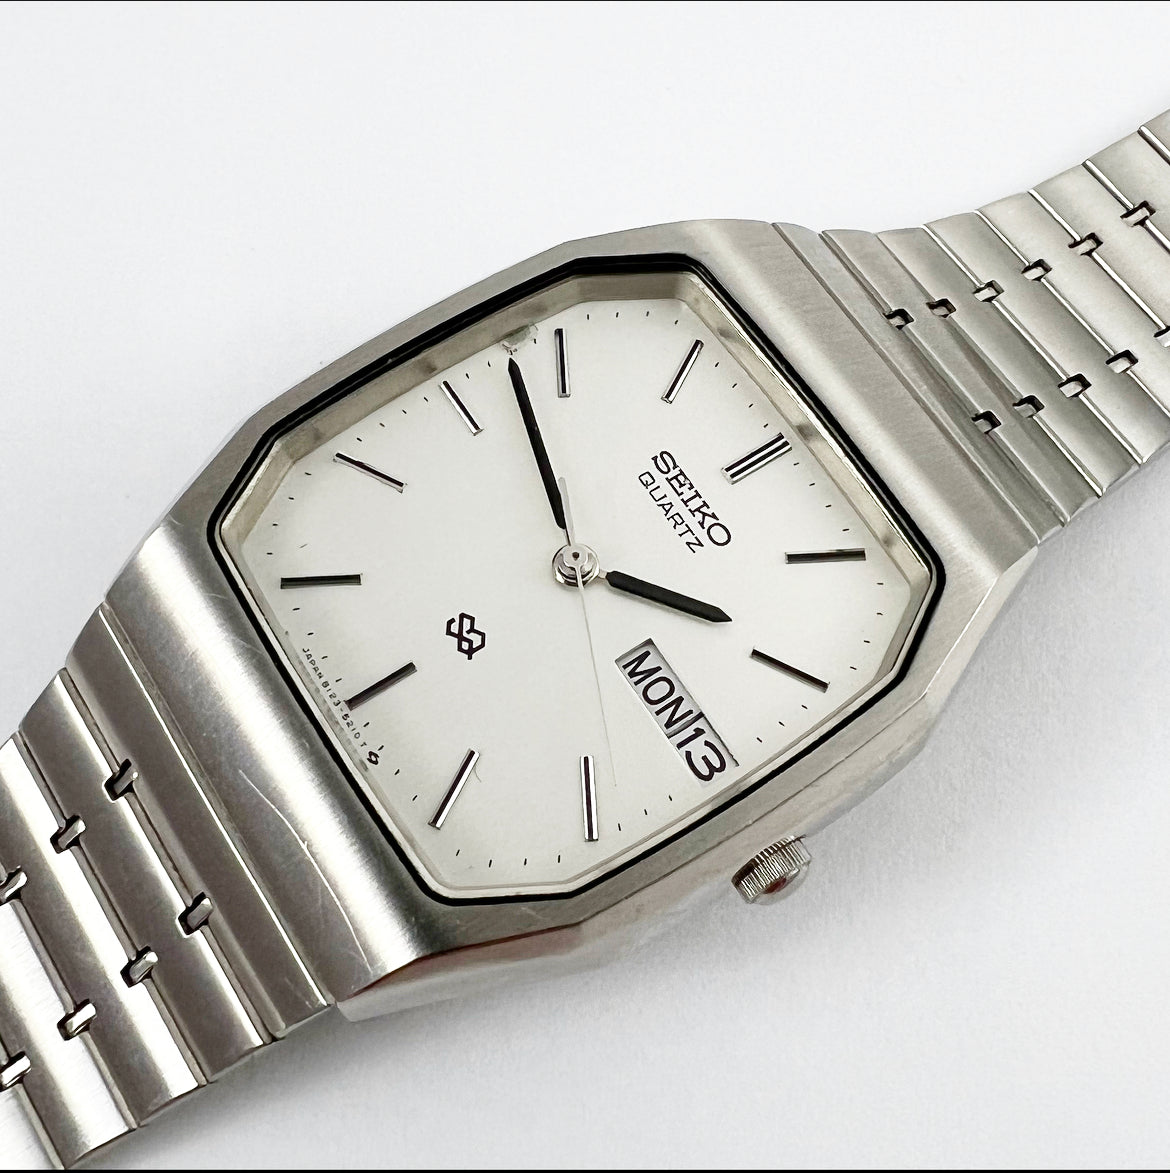 1983 Seiko SQ 8123-5180 Quartz – Mornington Watches